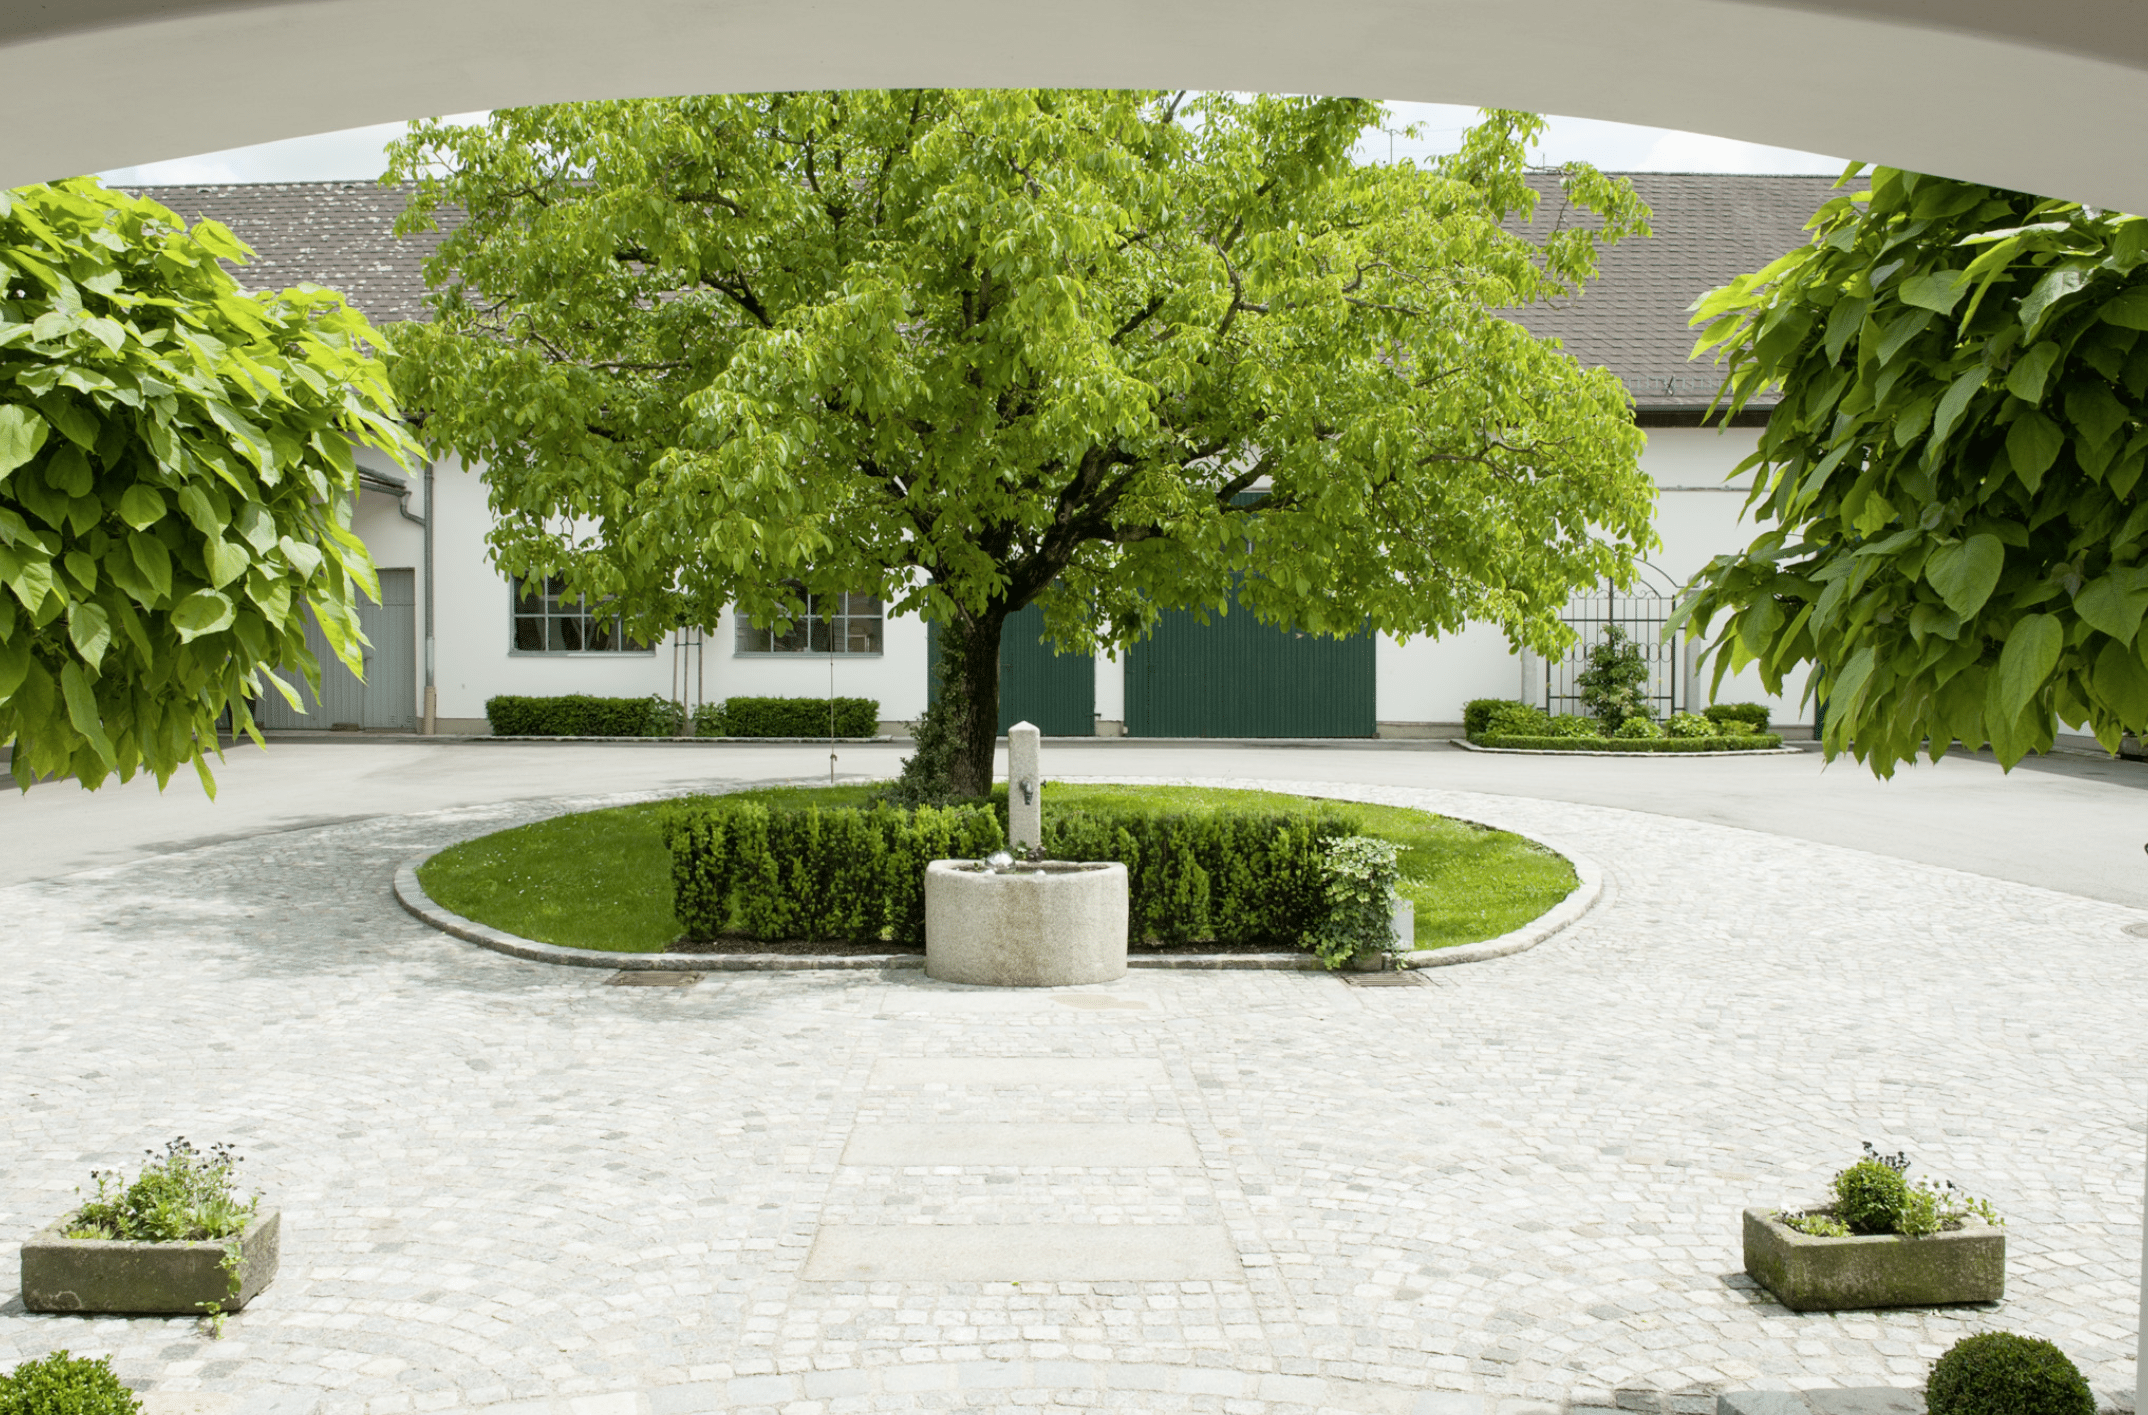 Gartenbau Schmid präsentiert dem gepflasterten Innenhof eines Bauernhofs mit hohem Baum und Brunnen in der Mitte.